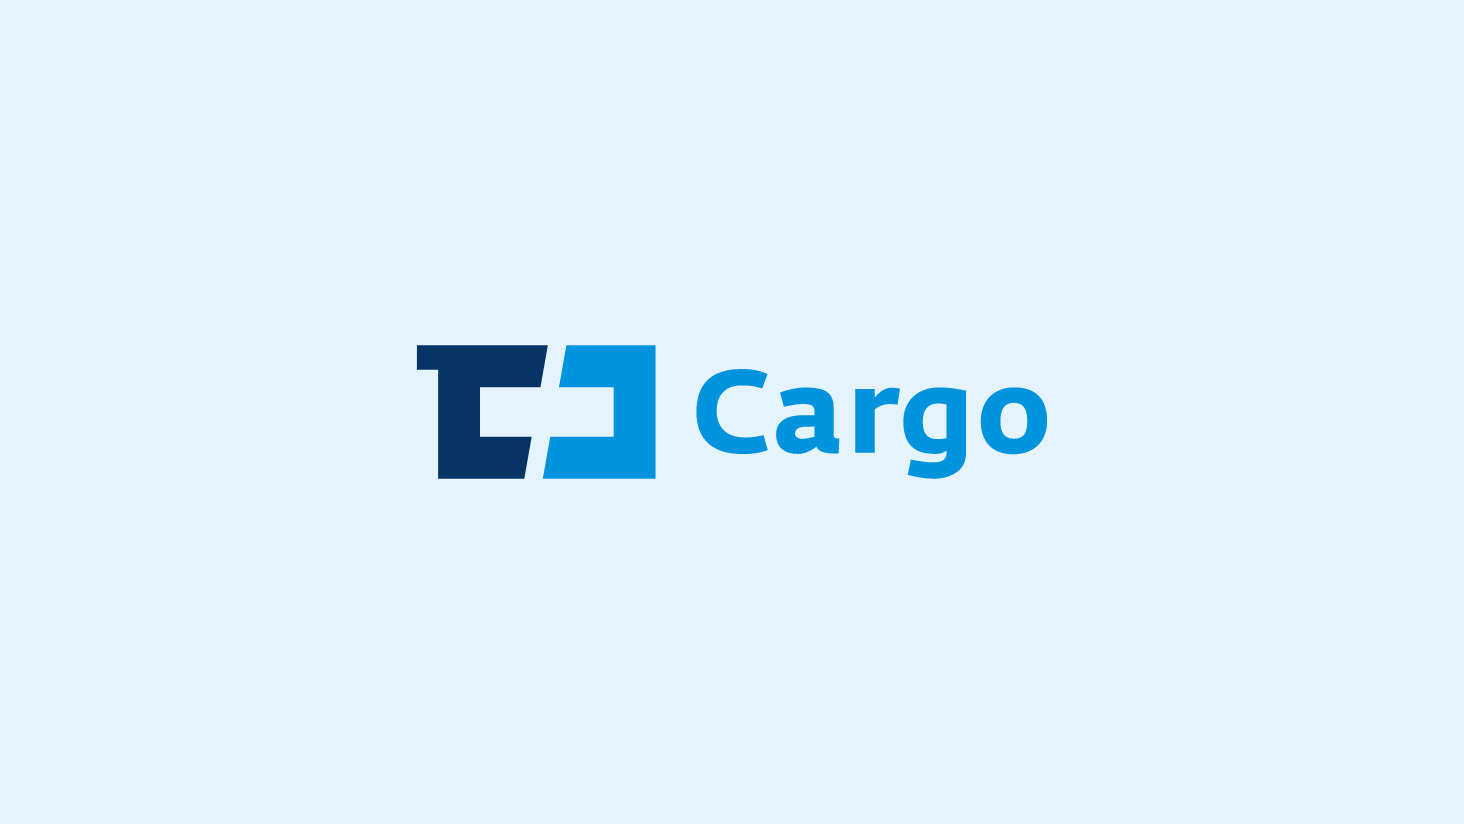 ČD Cargo